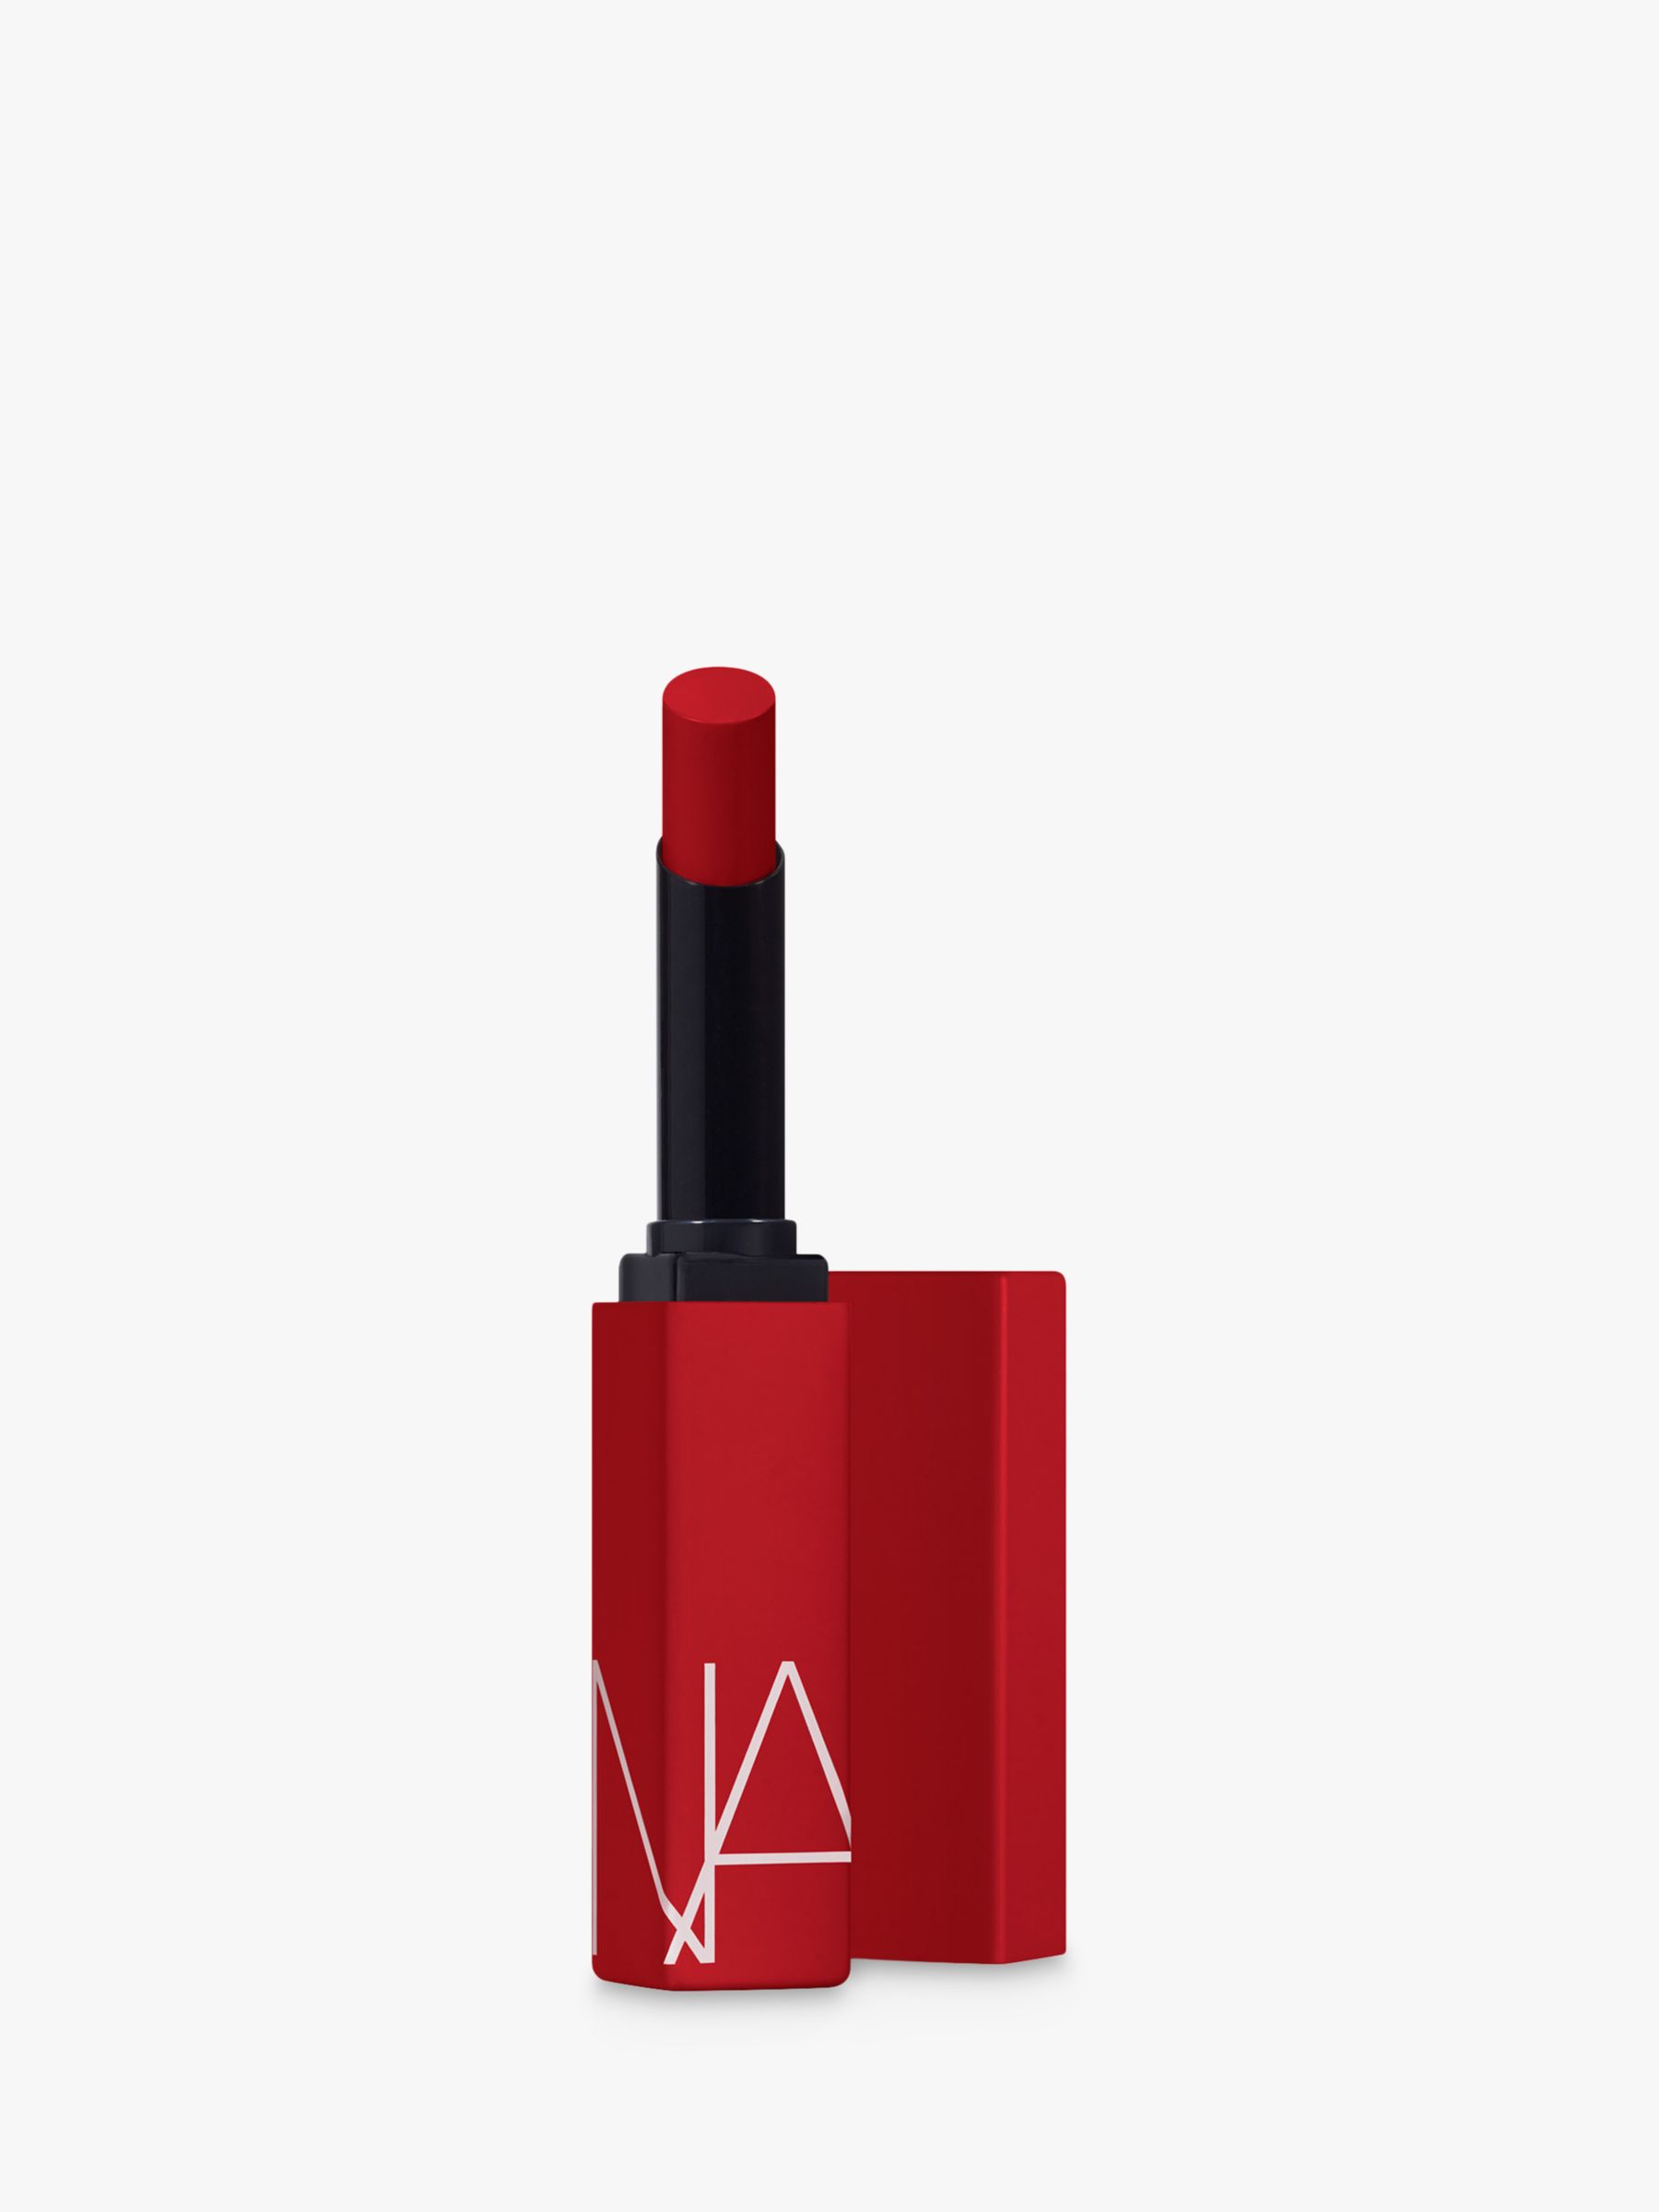 NARS Powermatte Lipstick, Dragon Girl, £26.50